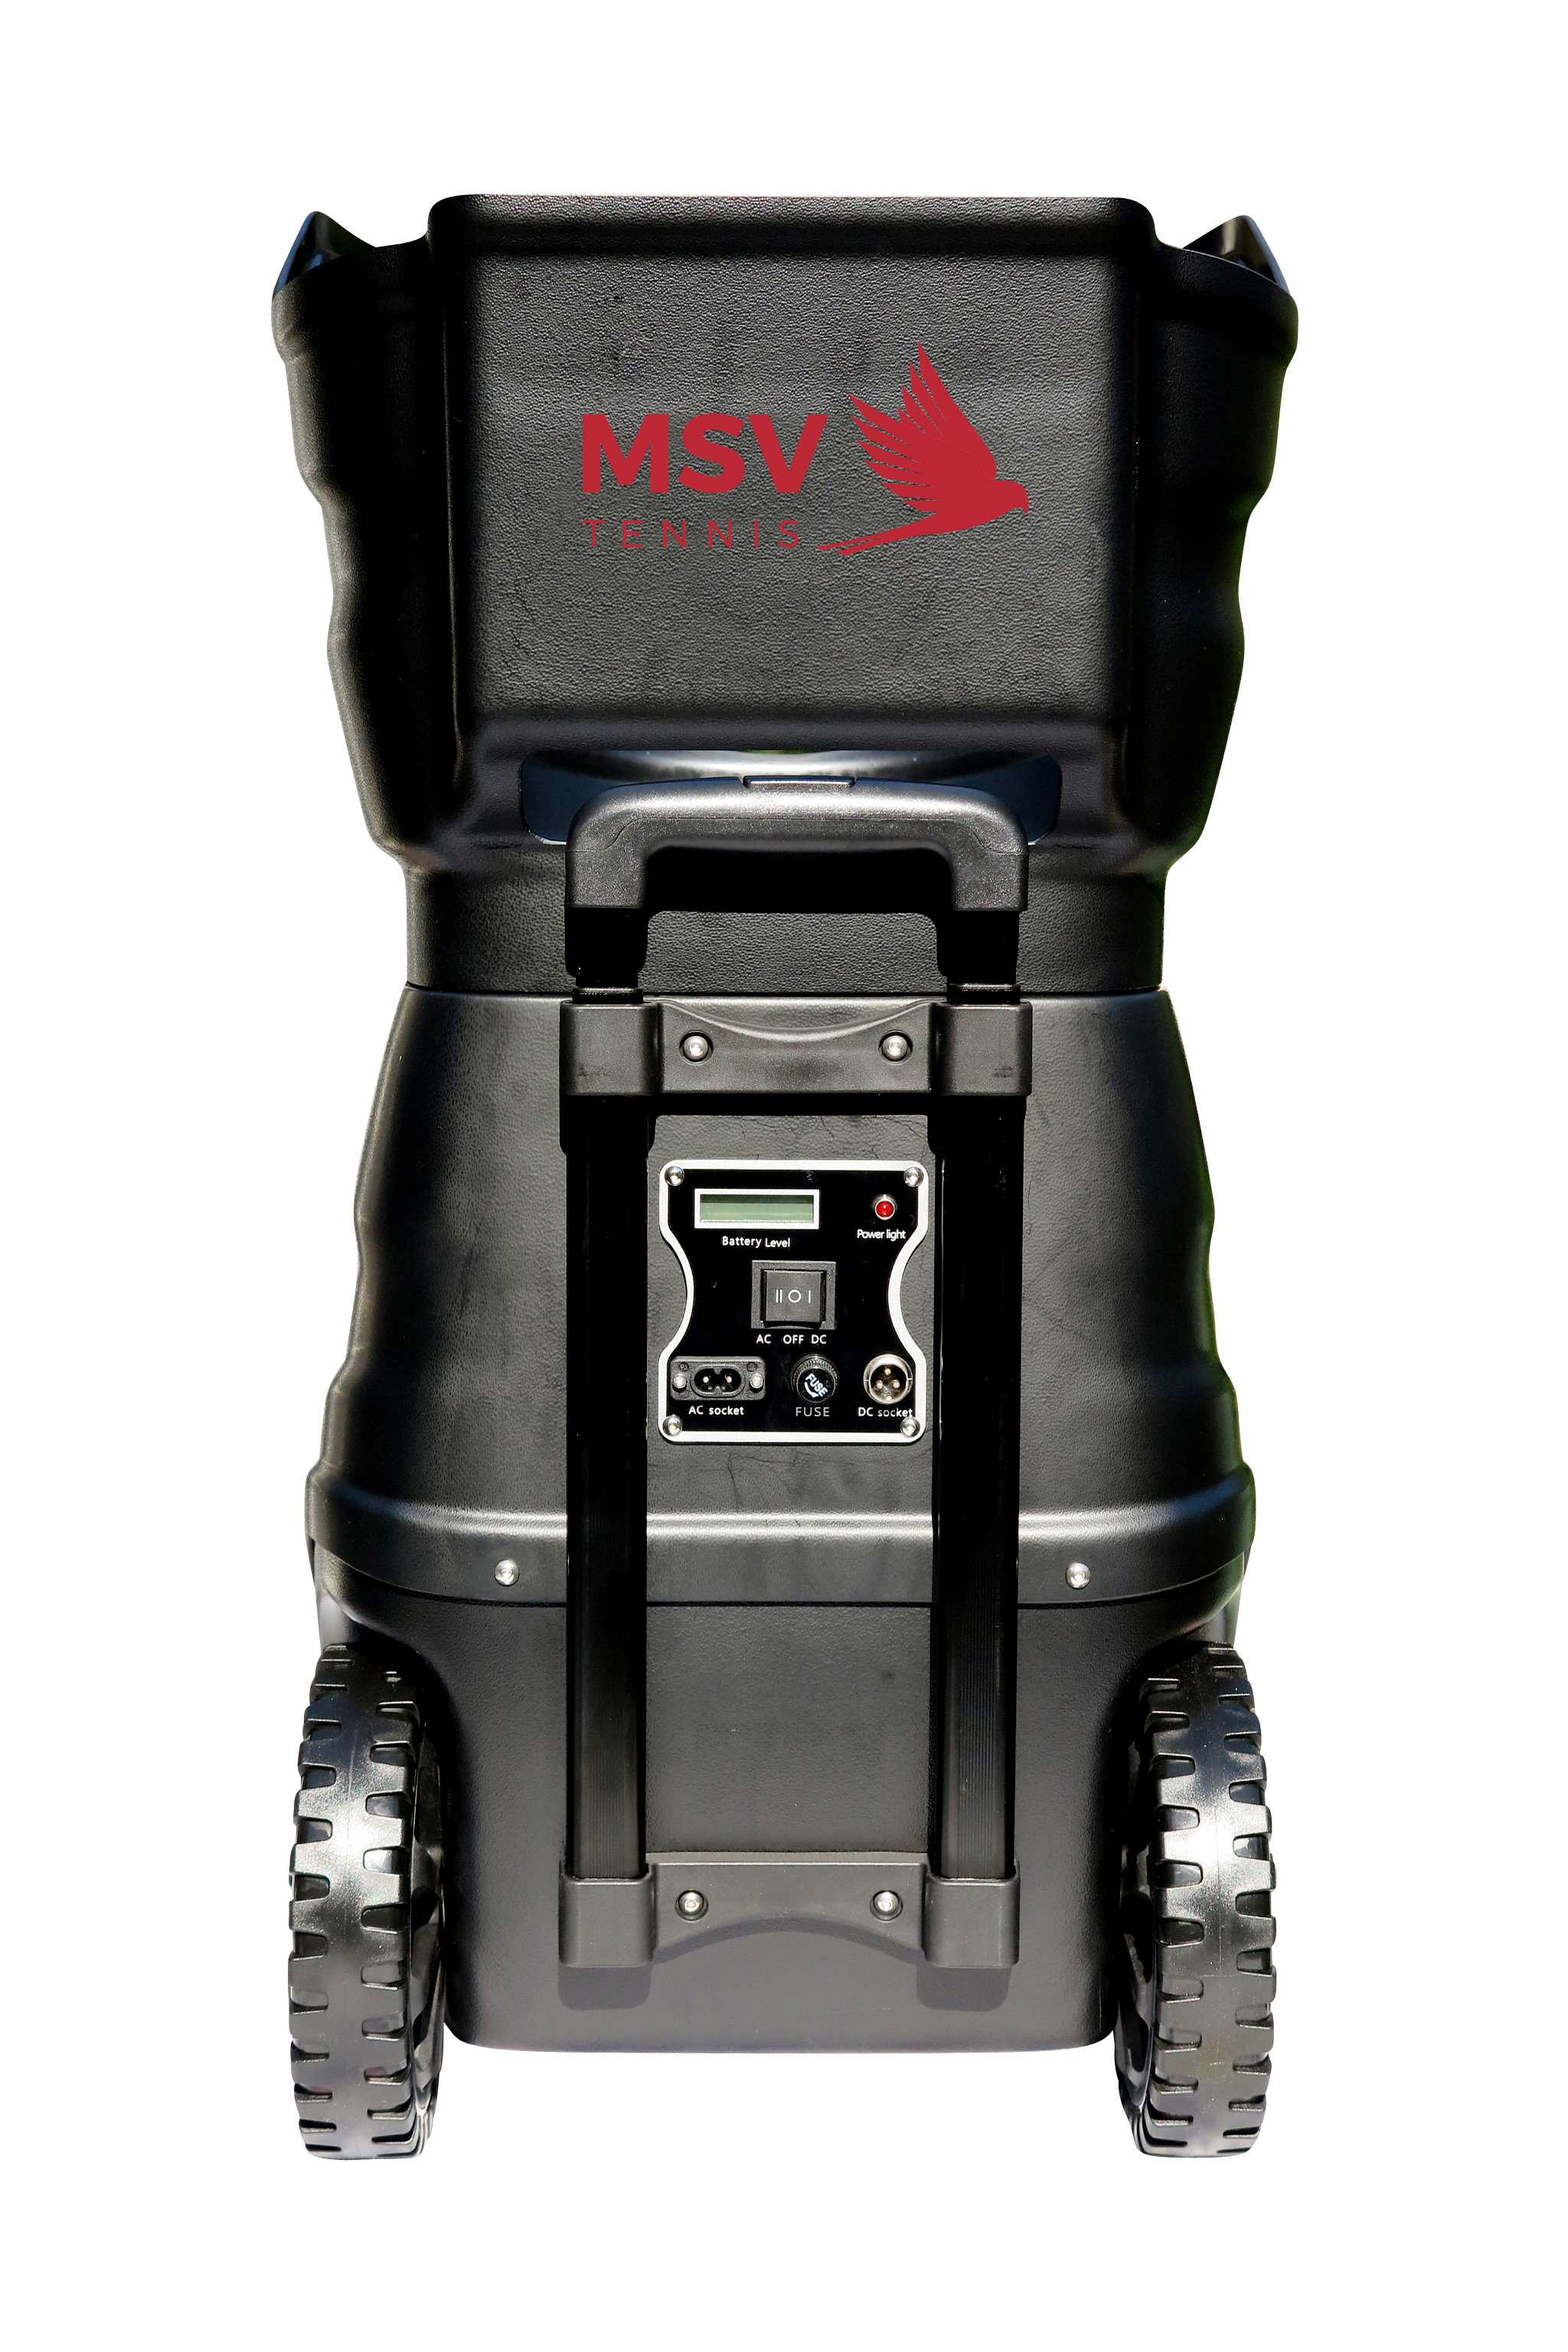 Teleskopgriff Typ 2 Standard für MSV PlayTec